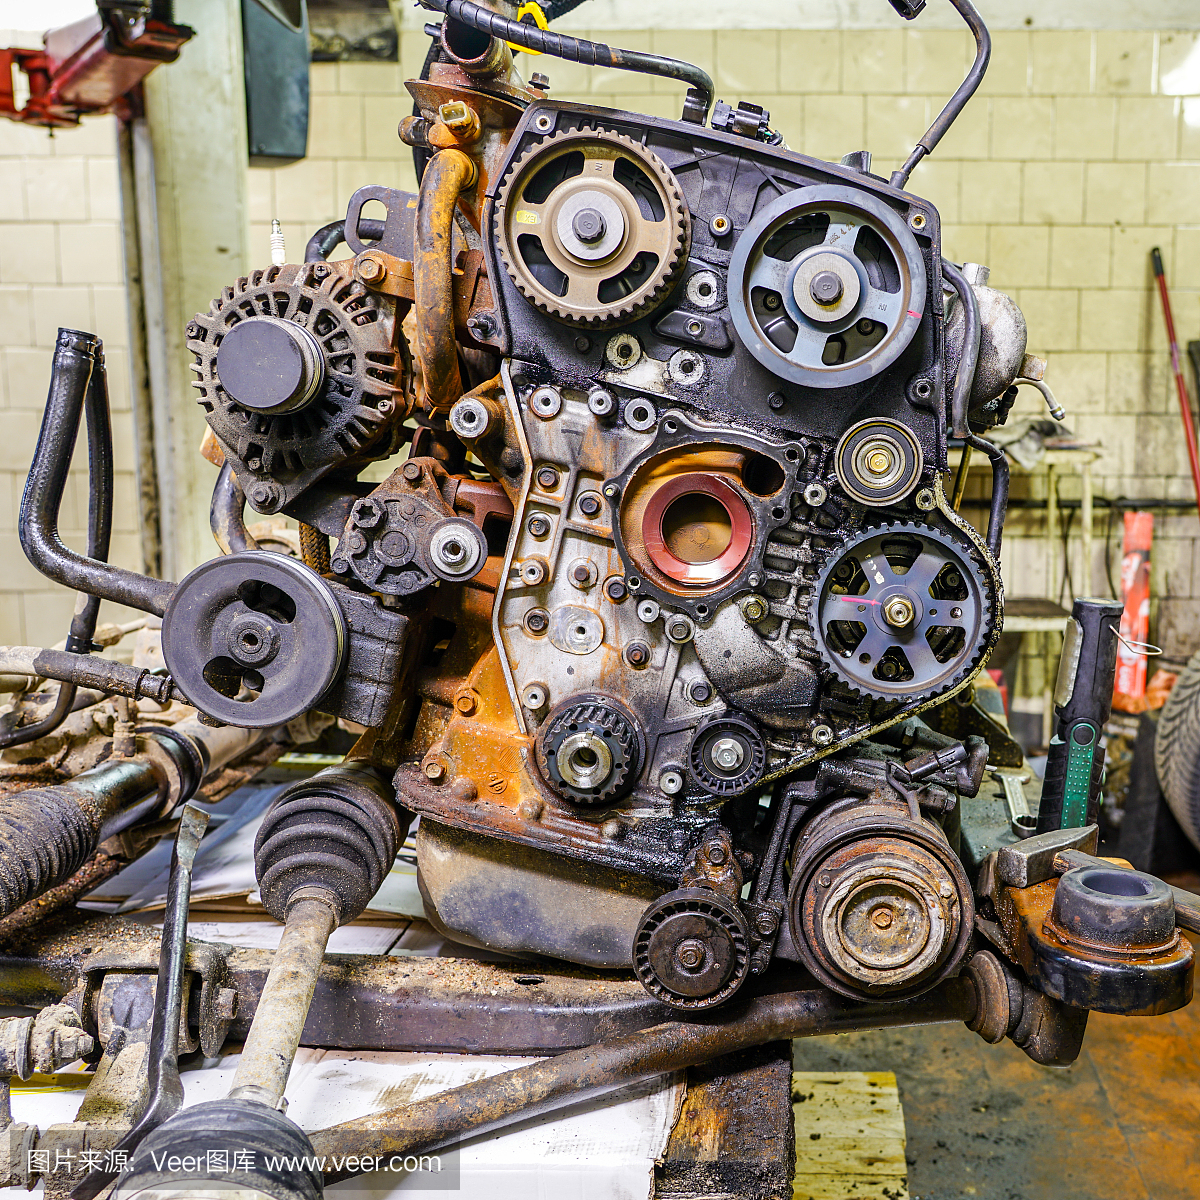 旧汽车发动机修理,从汽车上拆下发动机